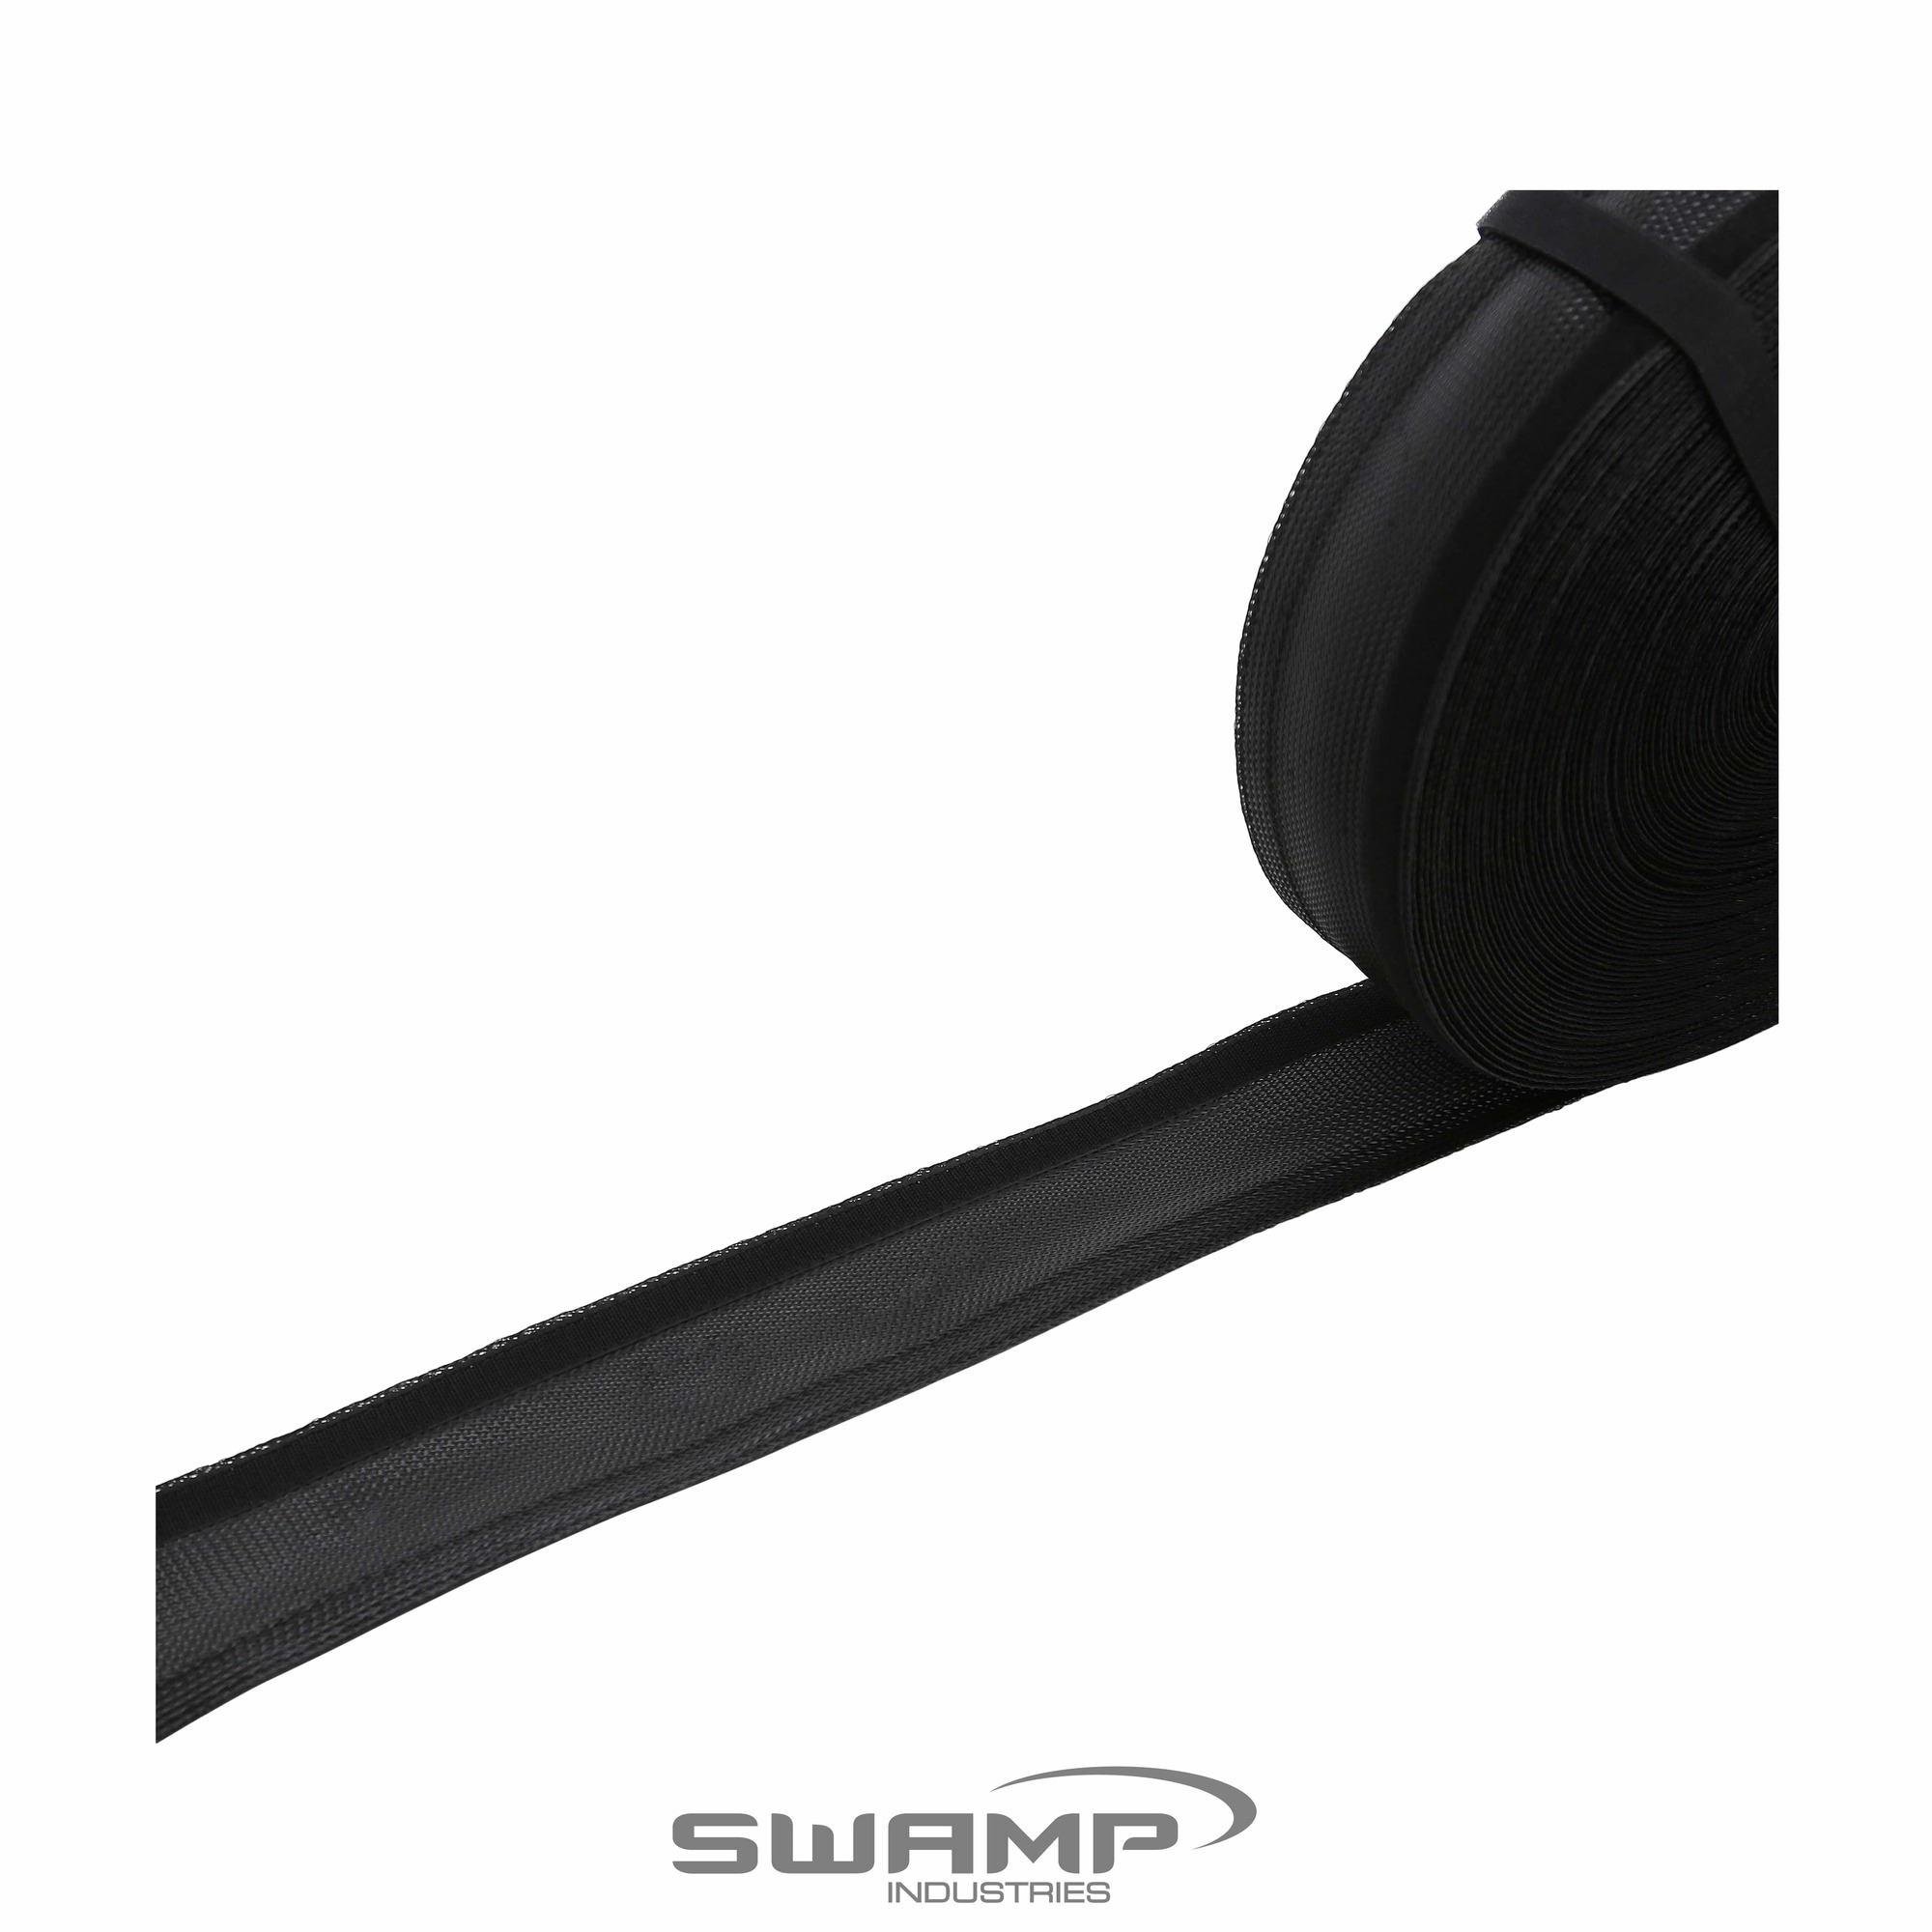 SWAMP PET003 Flexible Expandable Braided PET Cable Flex Wrap Sleeve - Per Metre